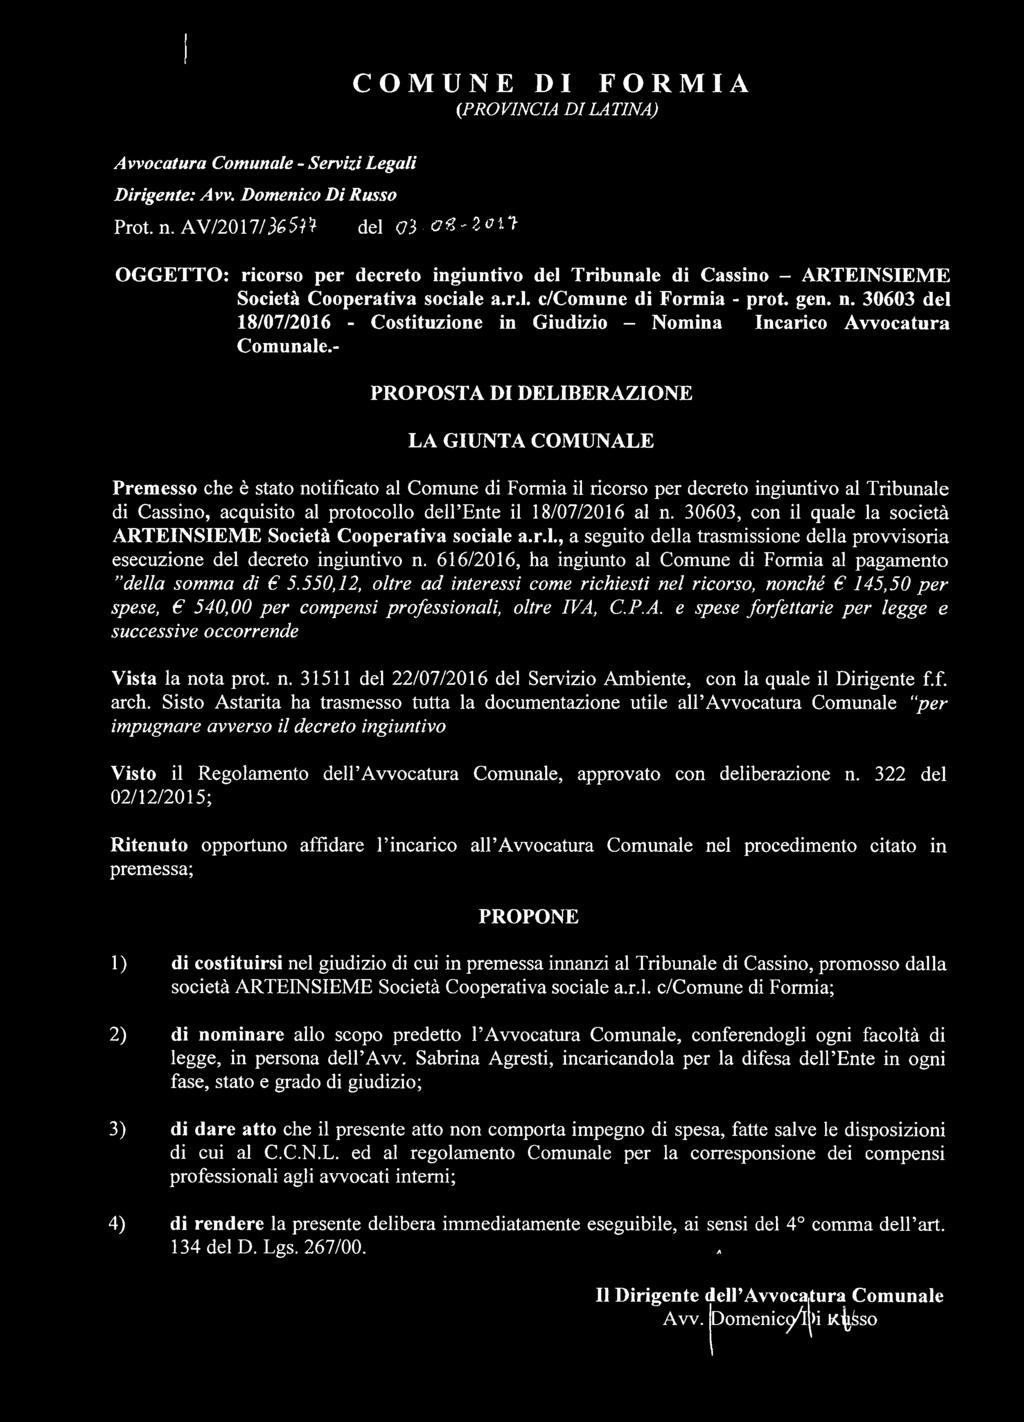 30603 del 18/07/2016 - Costituzione in Giudizio - Nomina Incarico Avvocatura Comunale.